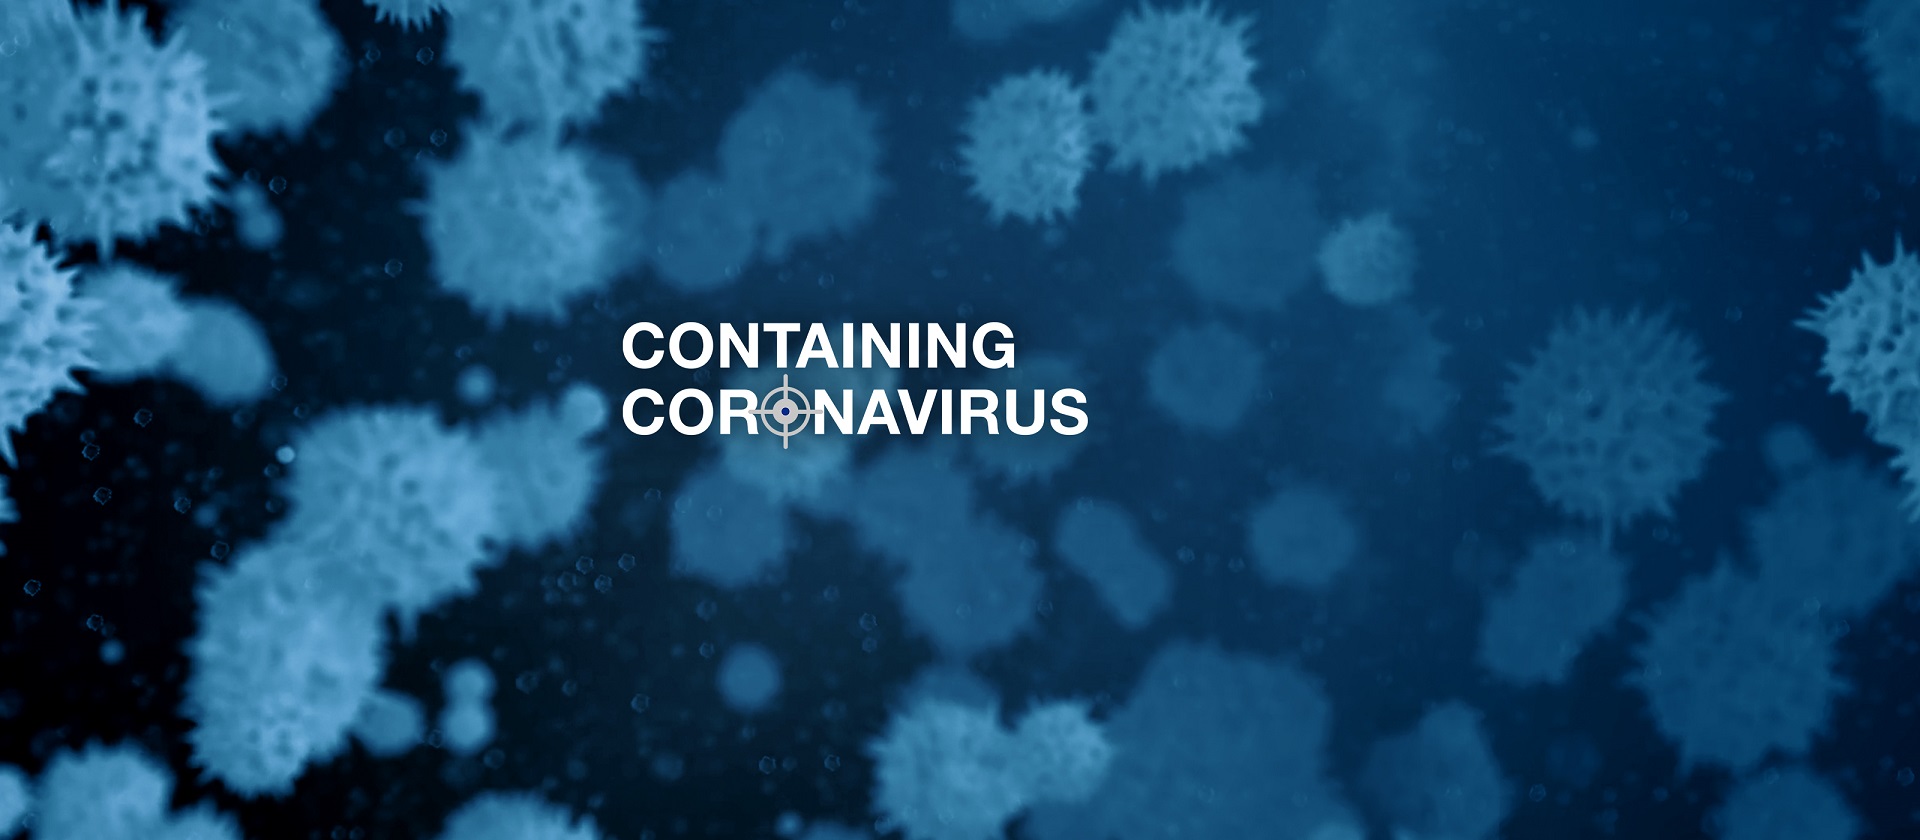 The Heat: Containing coronavirus – China and world’s response